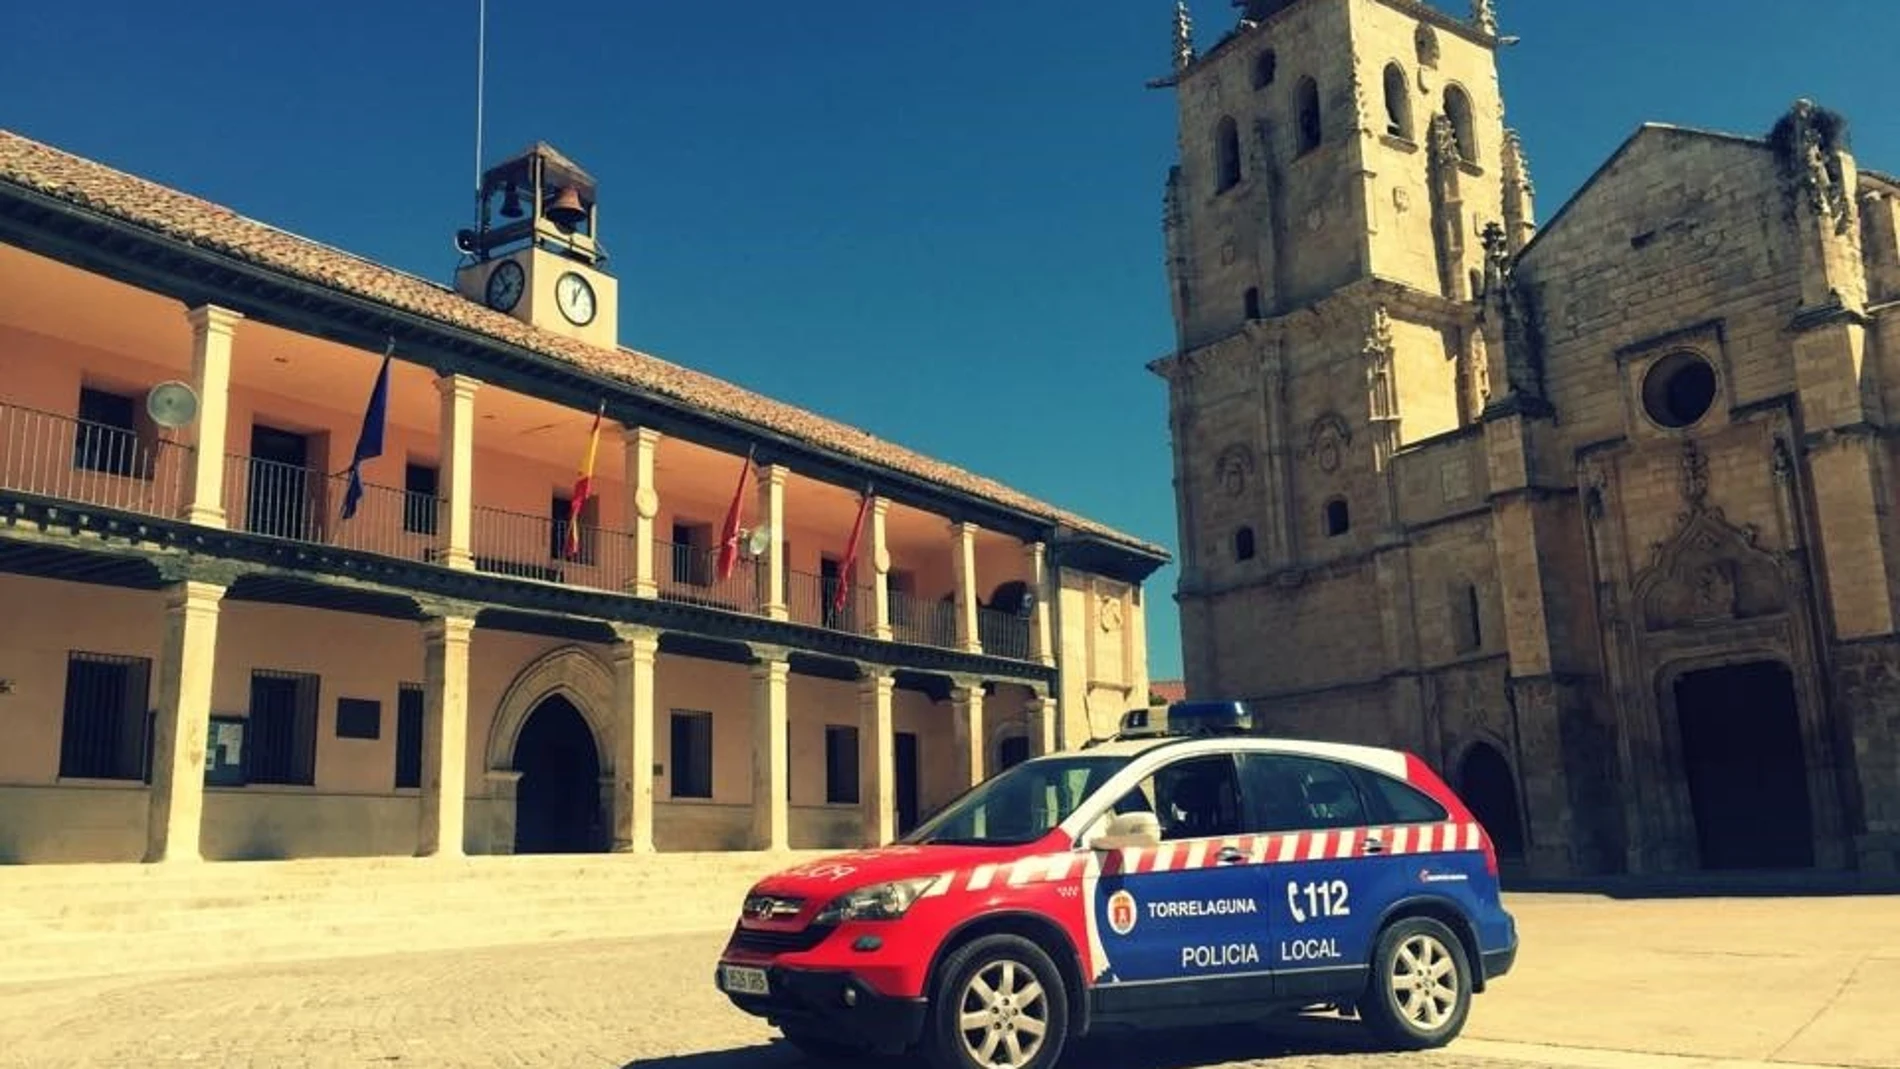 Imagen de Torrelaguna con un coche de la Policía Local